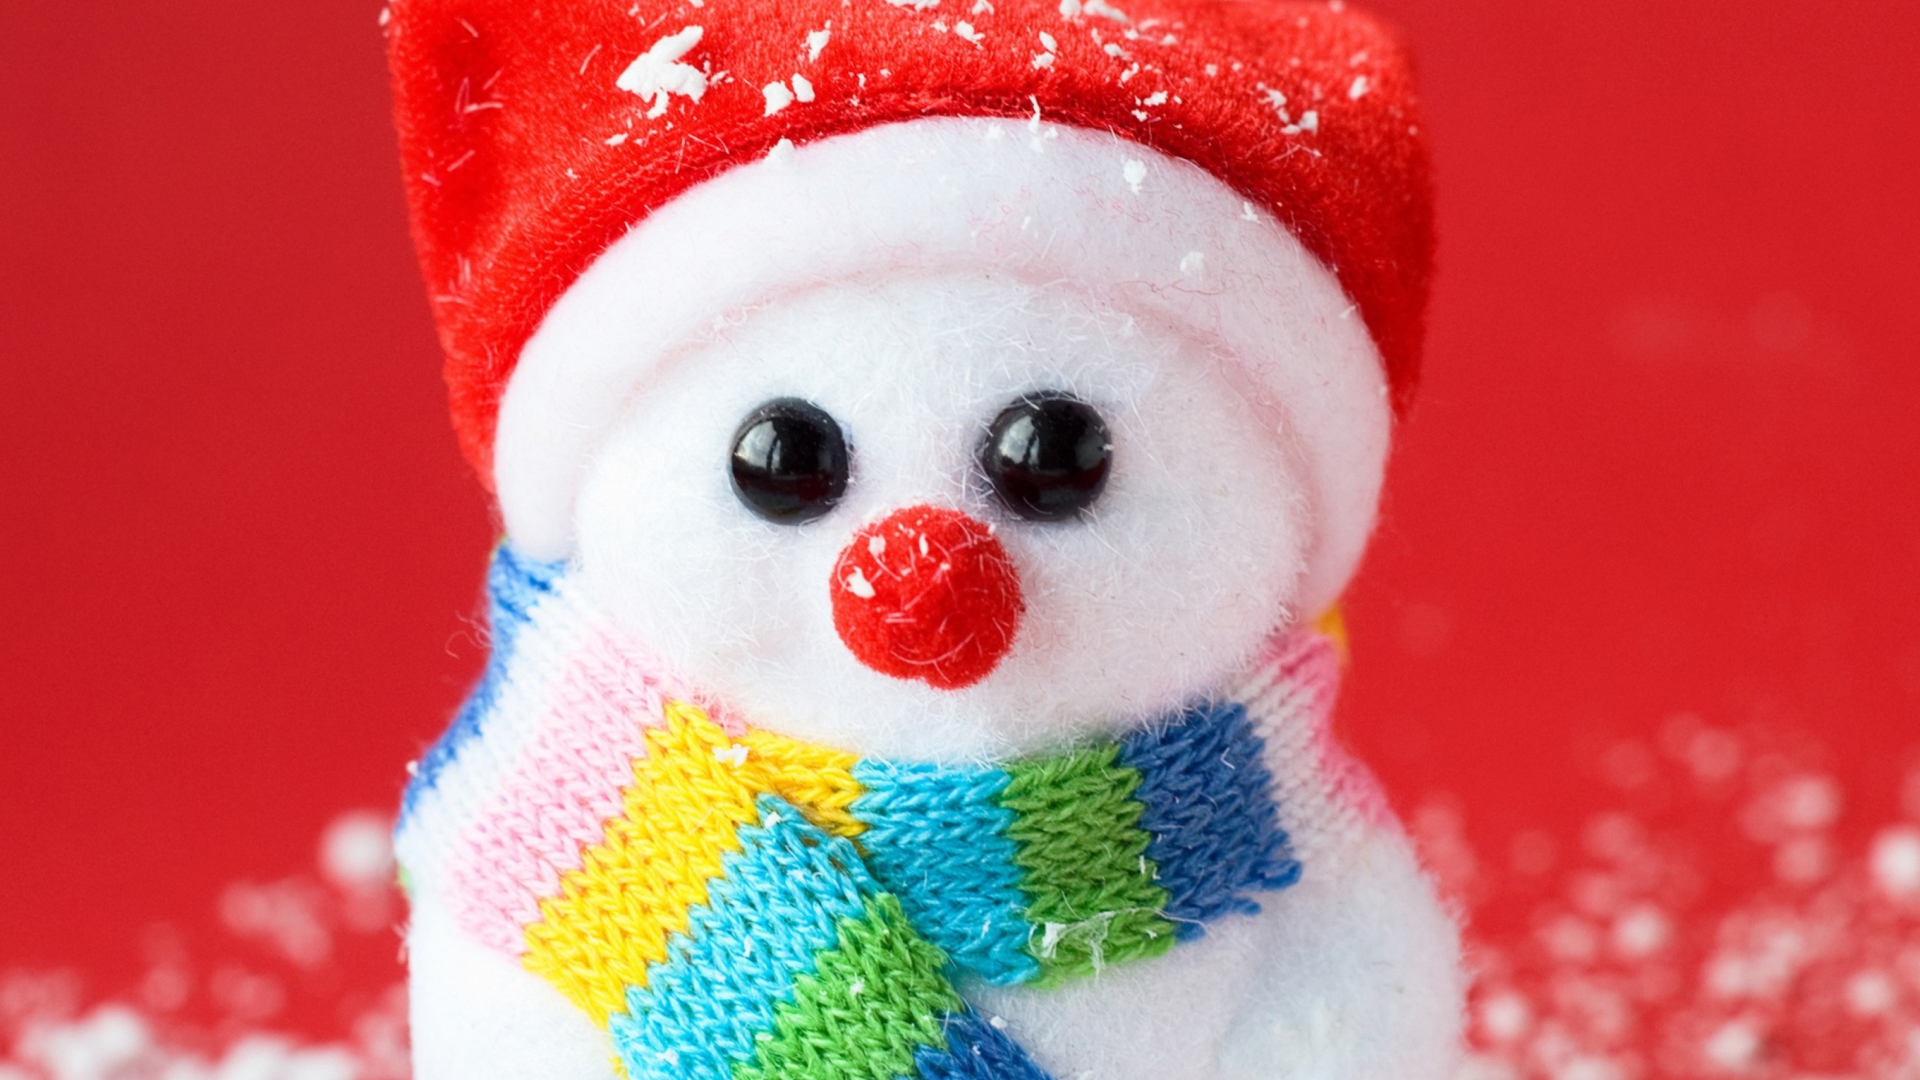 Обои Cute Christmas Snowman 1920x1080